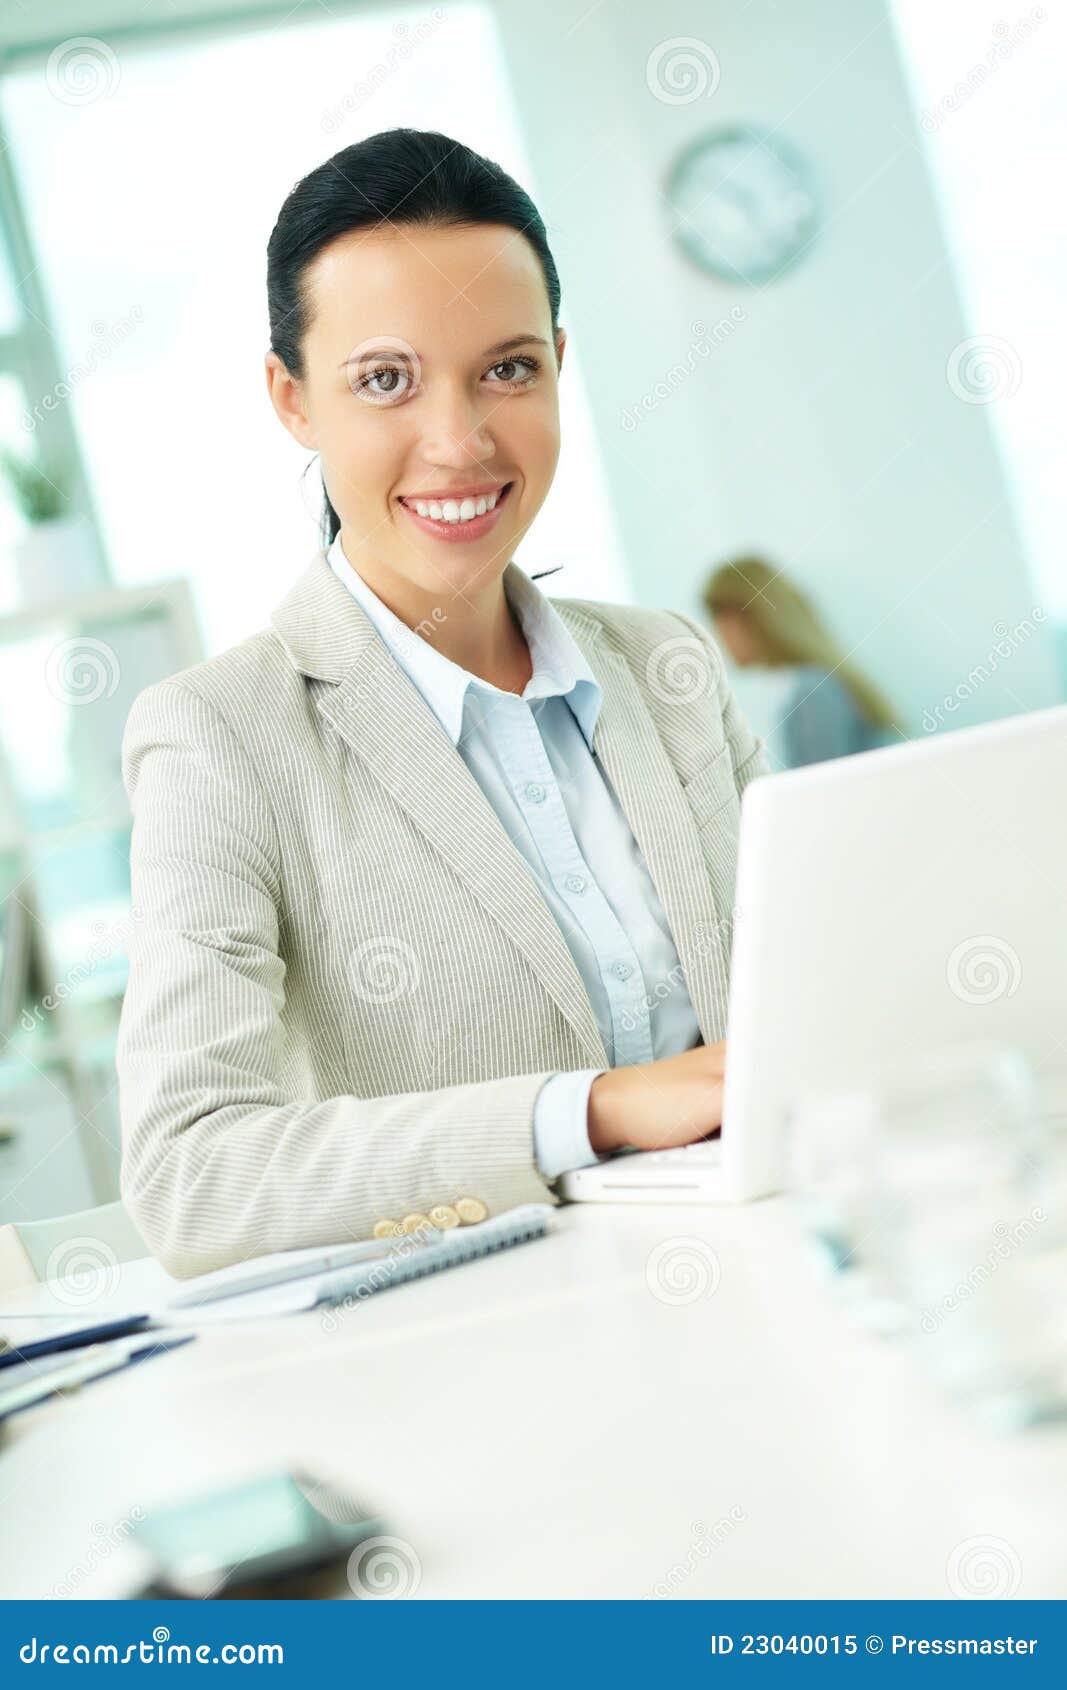 Secretary working stock image. Image of lifestyle, environment - 23040015